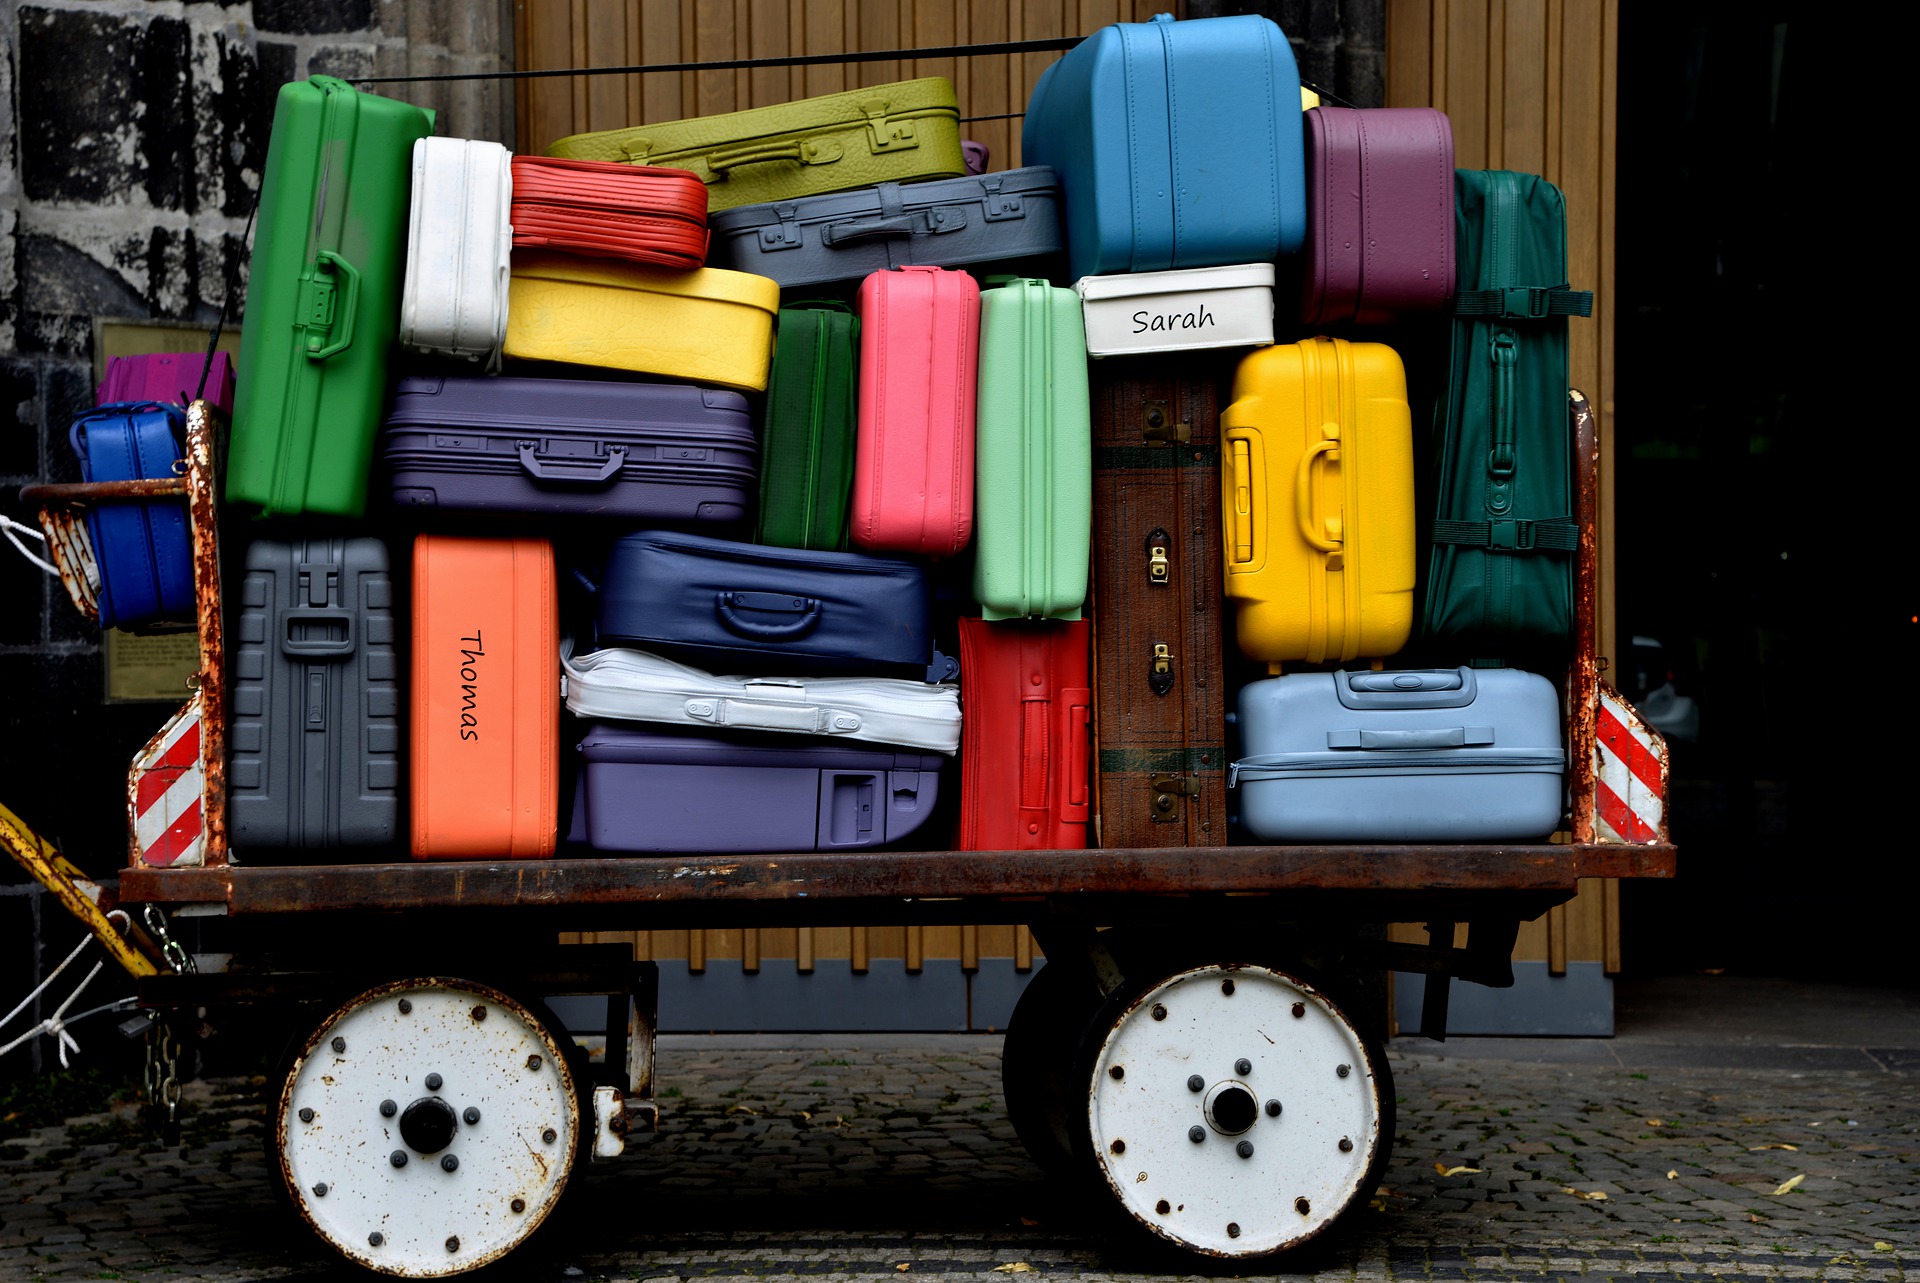 Les franchises bagages easyJet  GO Voyages - Le blog de voyage